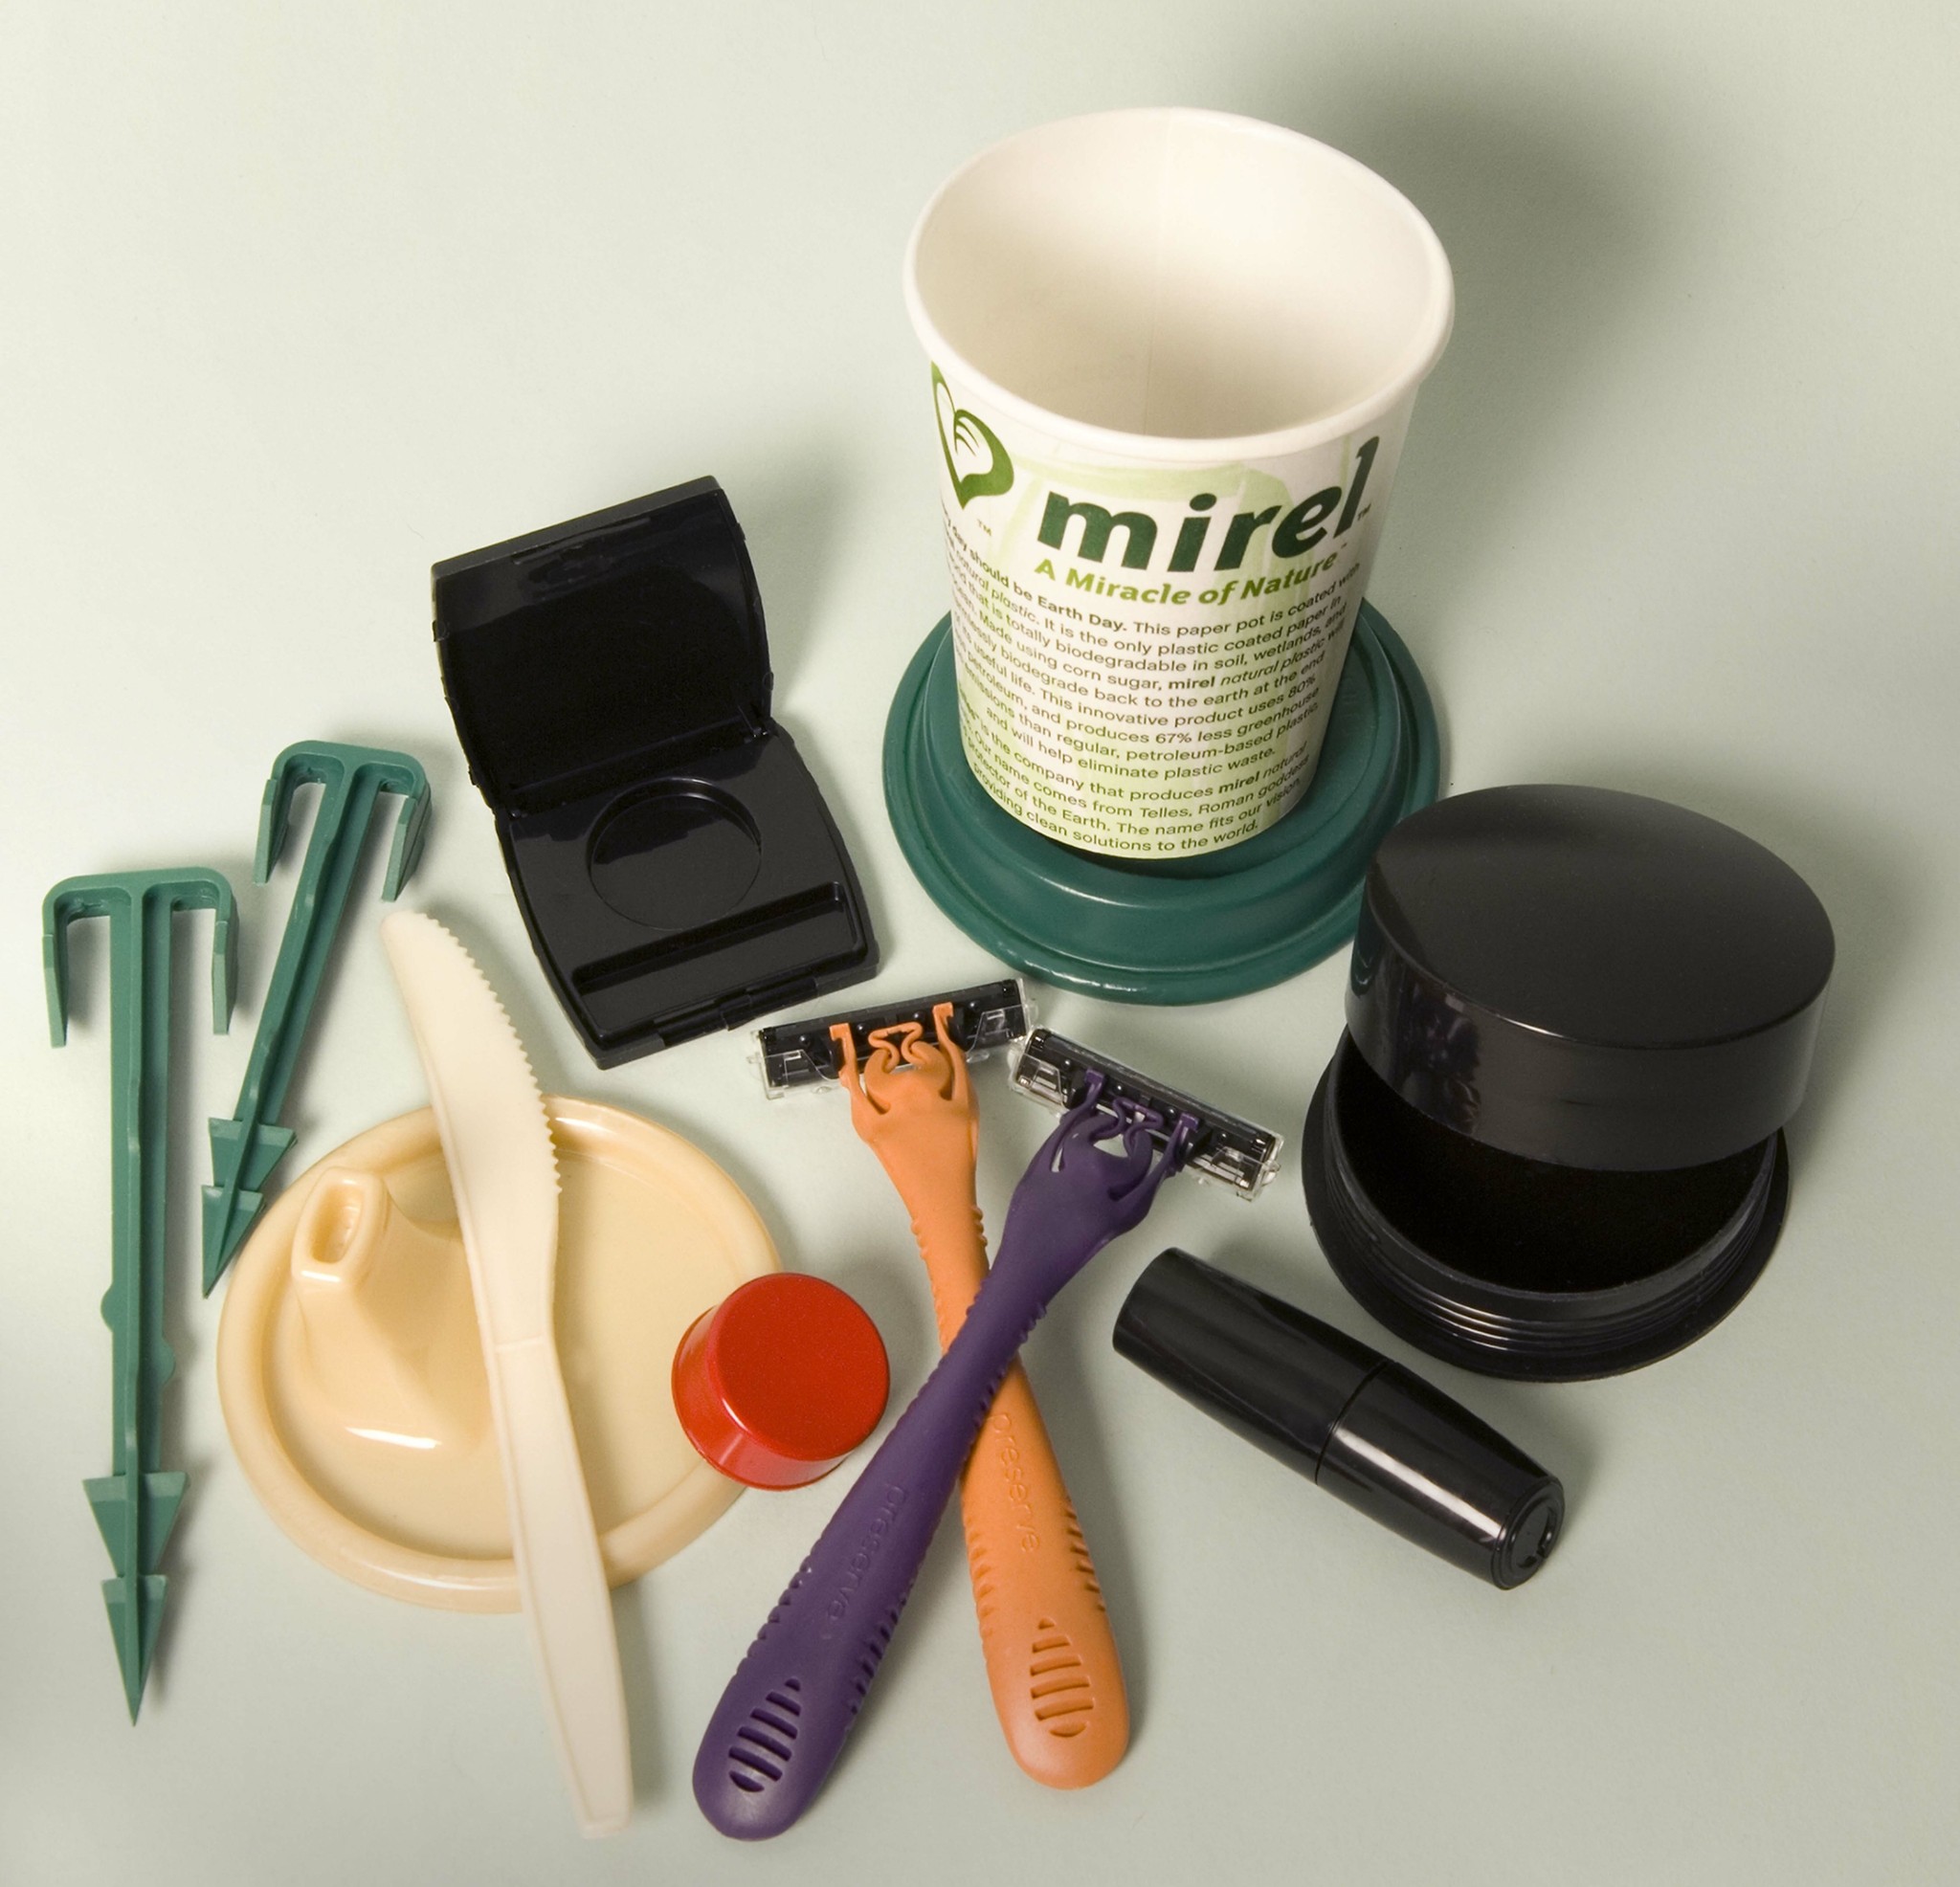 Zu sehen sind mehrere Produkte aus Kunststoff: Zeltheringe, ein Schnabeltassendeckel, ein kleiner roter Flaschendeckel, ein Messer, eine Kosmetikdose, zwei Nassrasierer, ein Becher, eine Lippenstiftdose und eine Puderdose.